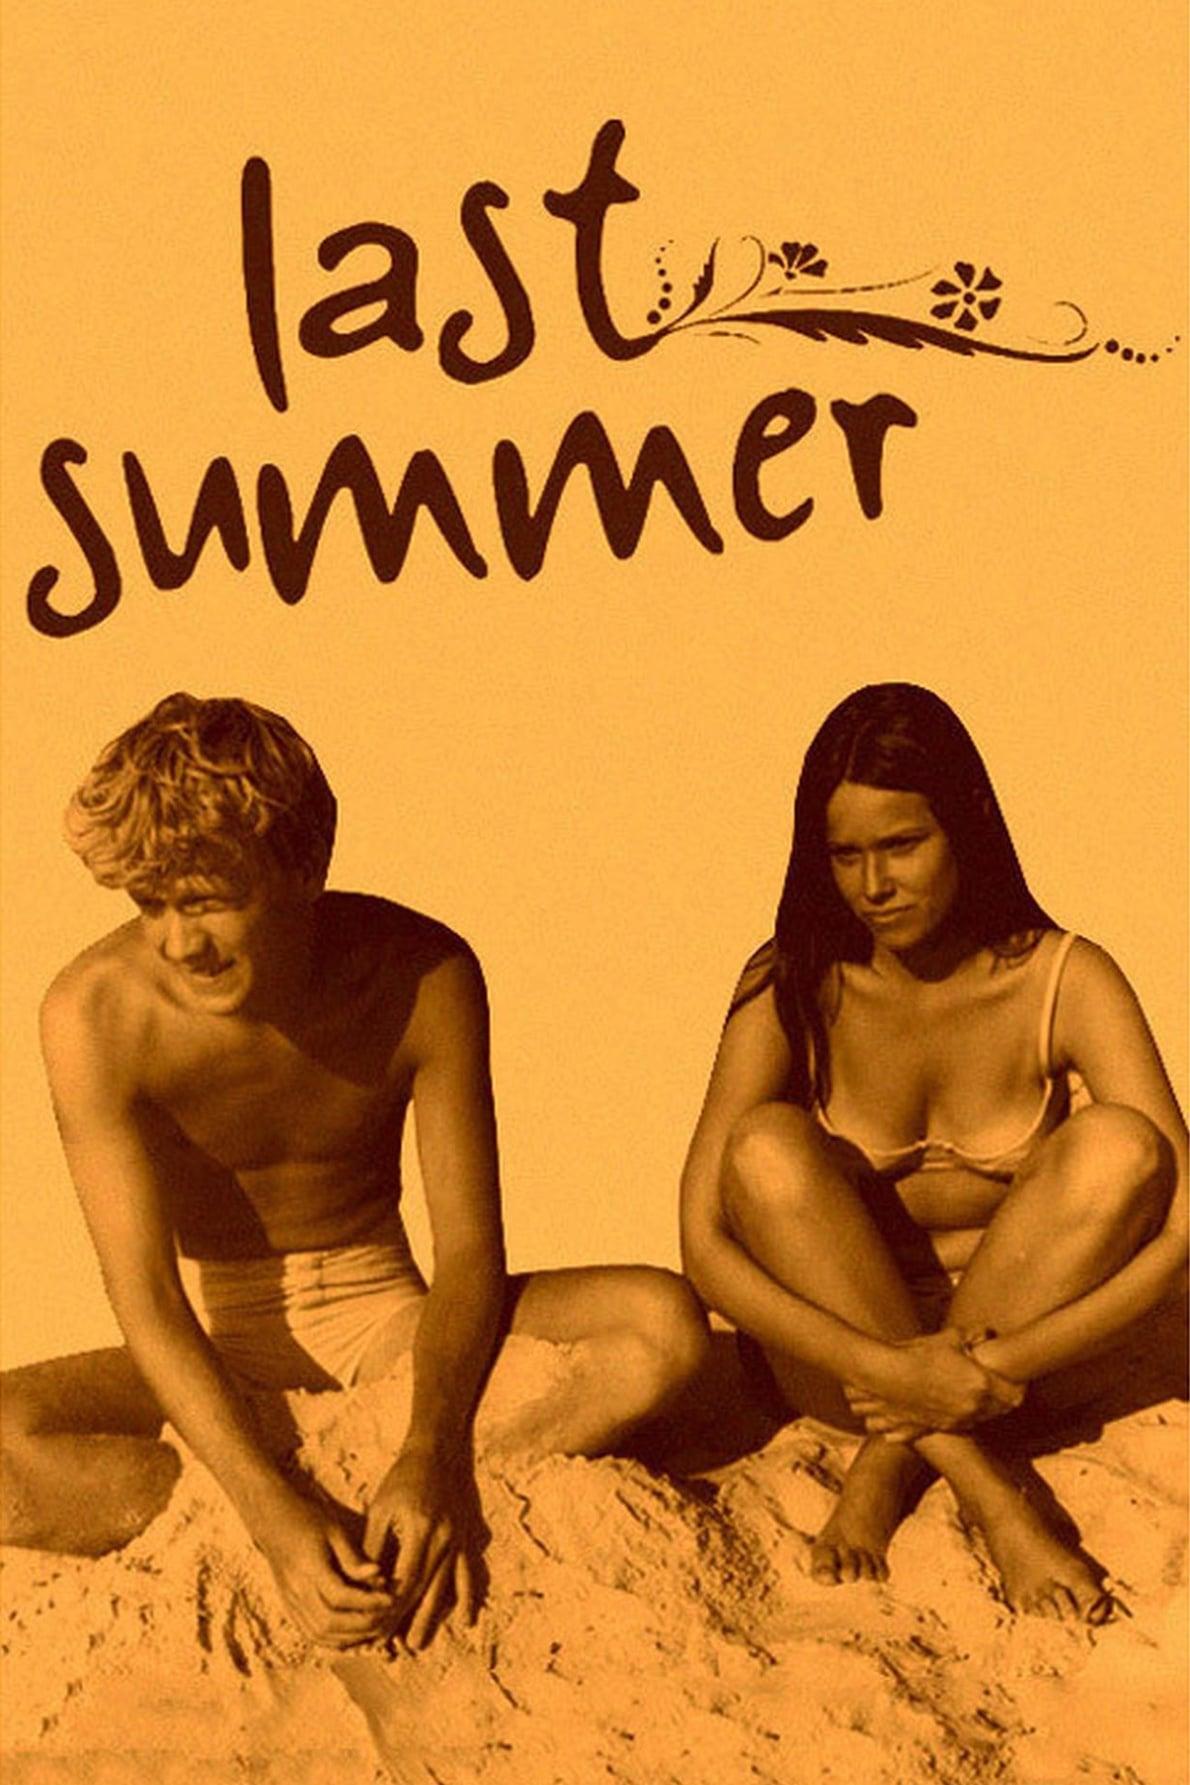 Last Summer poster